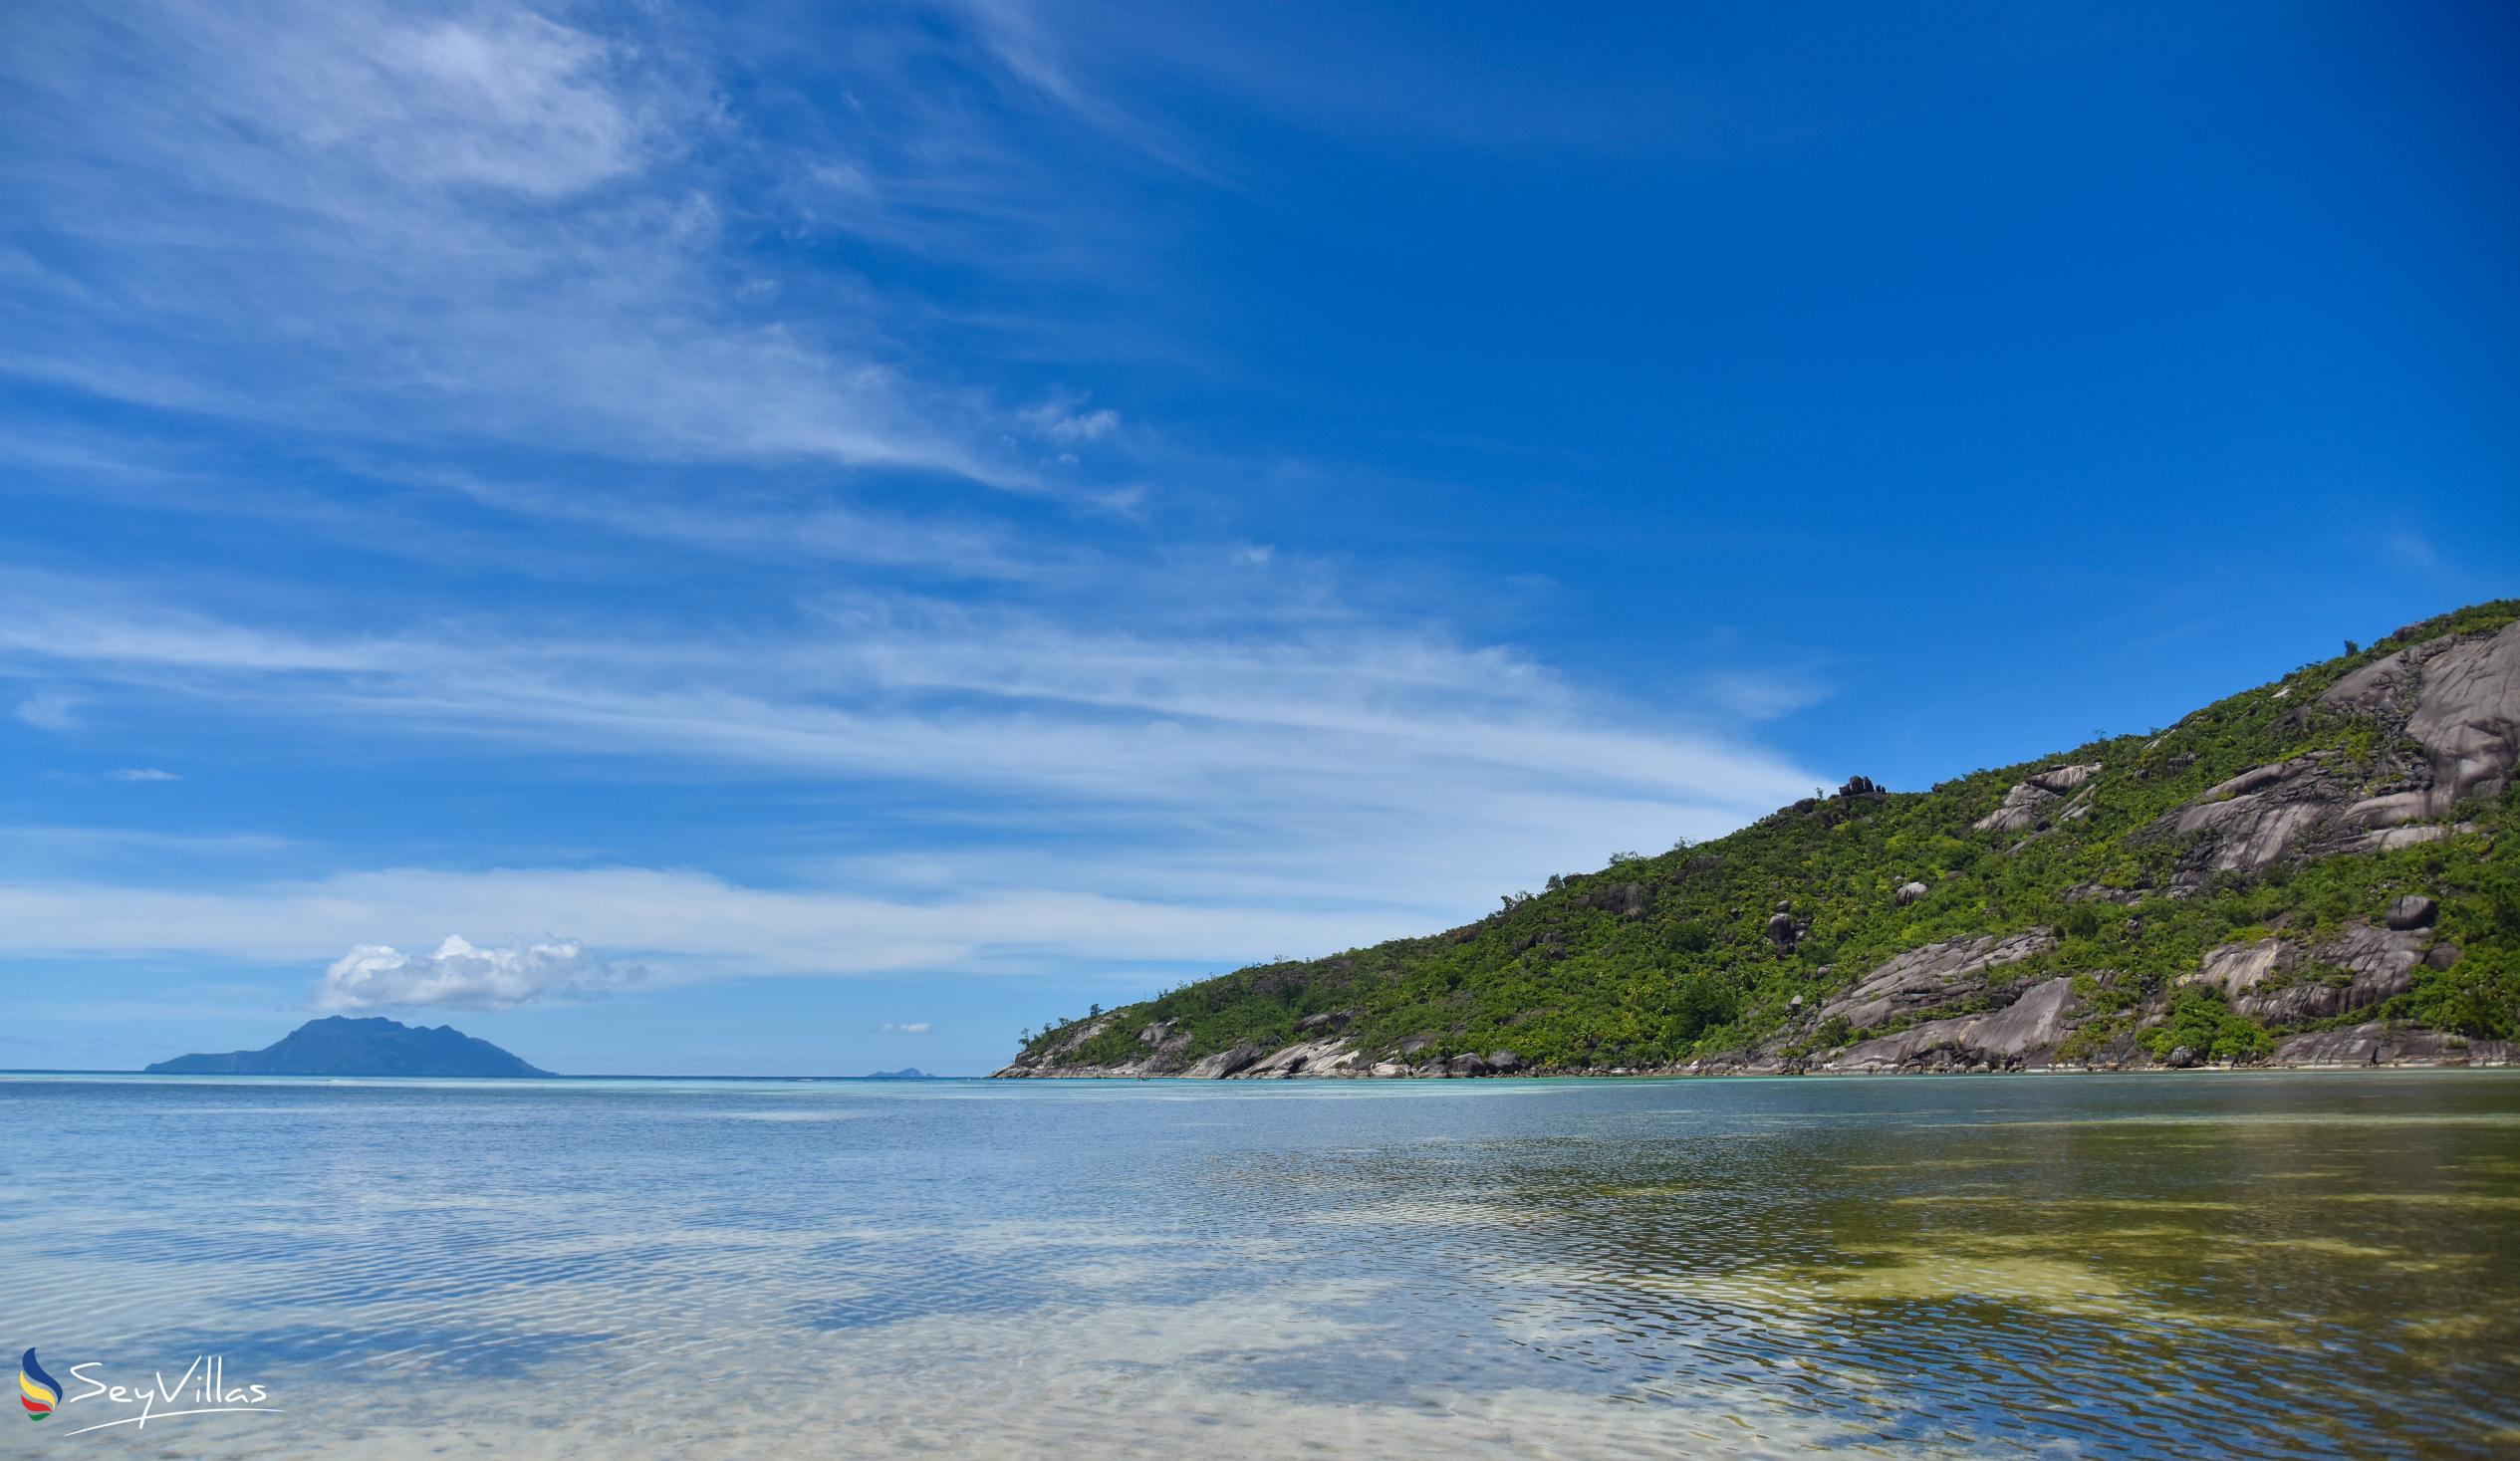 Photo 12: Baie Ternay - Mahé (Seychelles)